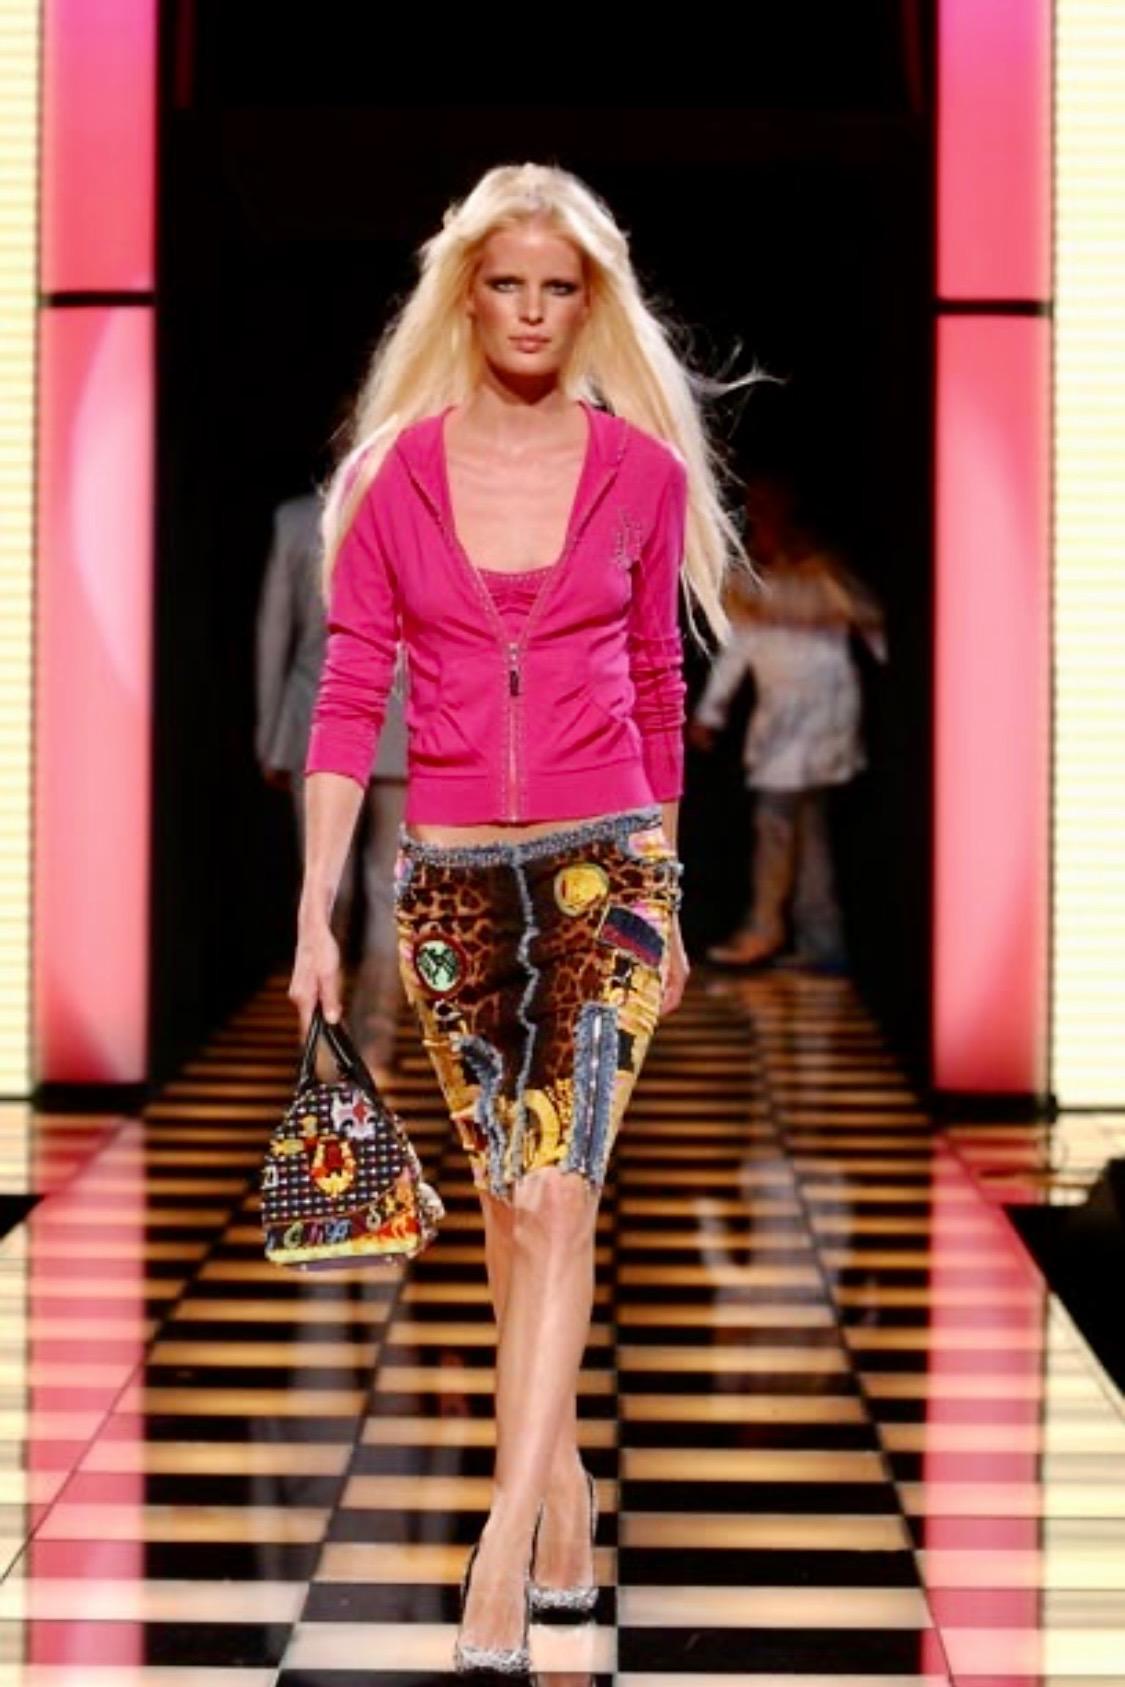 Wir präsentieren eine Tasche aus der Versace Chaos Couture Collection, entworfen von Donatella Versace. Diese Tasche im Boston-Stil weist eine Reihe von knalligen Prints und Mustern auf, die alle ein Synonym für die Marke Versace sind (Barock,